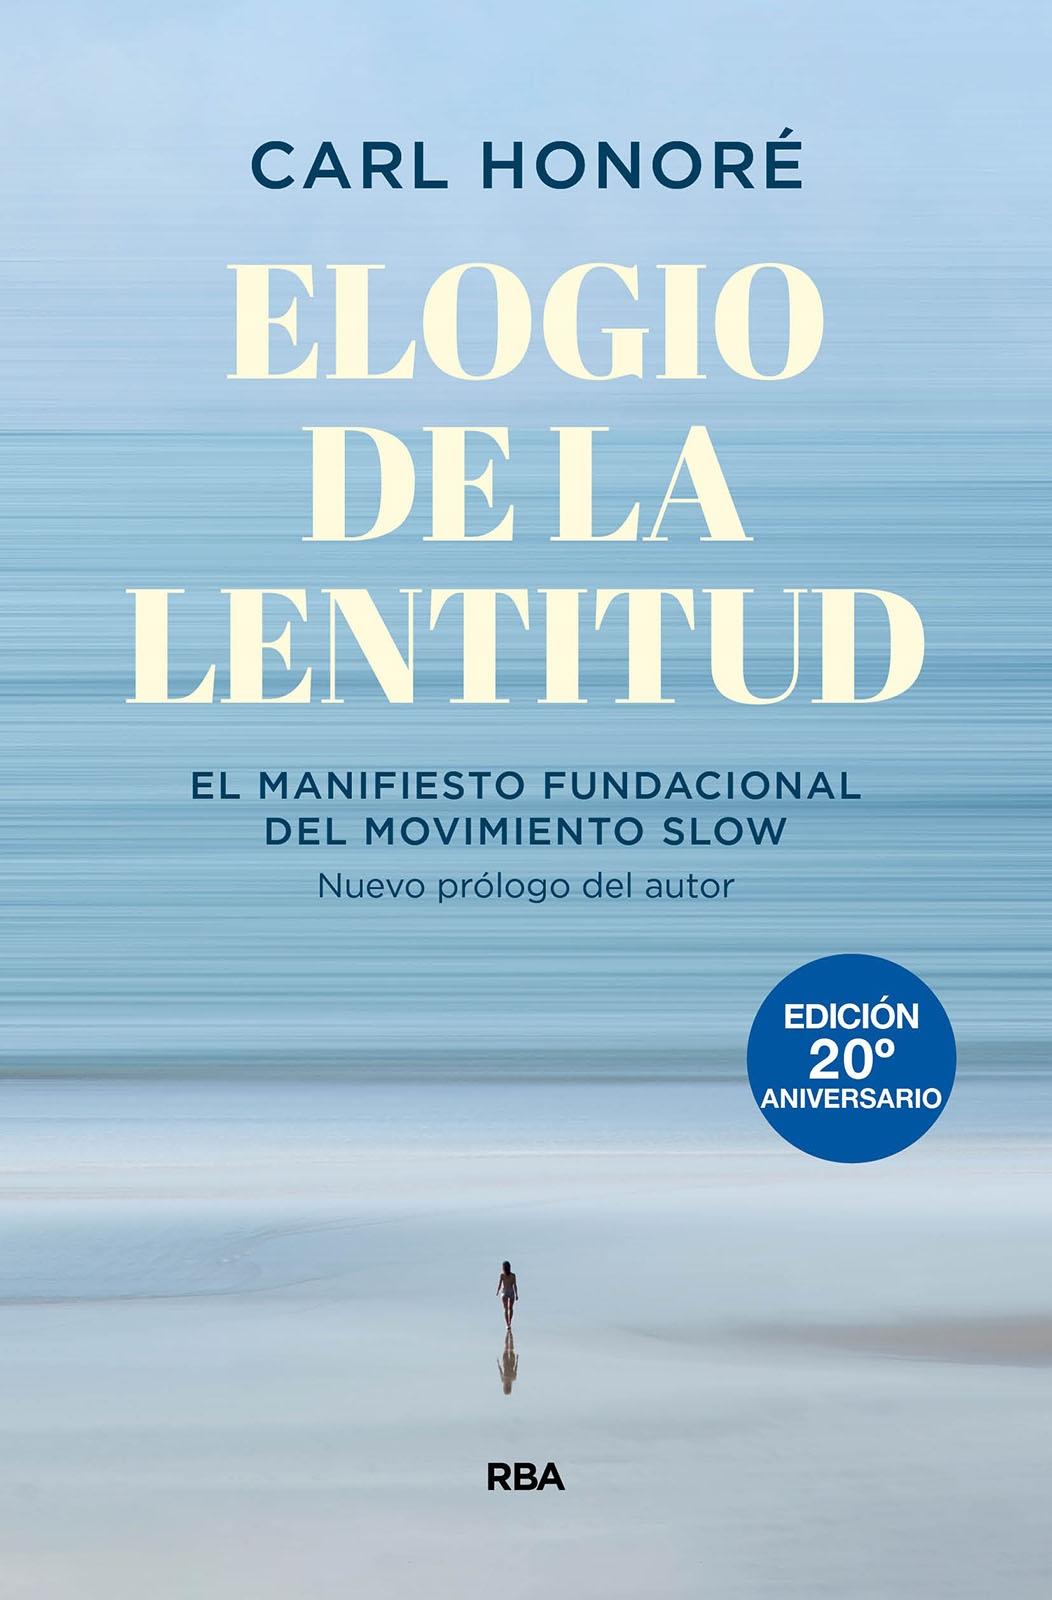 Elogio de la lentitud (Edición 20º aniversario) "El manifiesto fundacional del movimiento slow". 